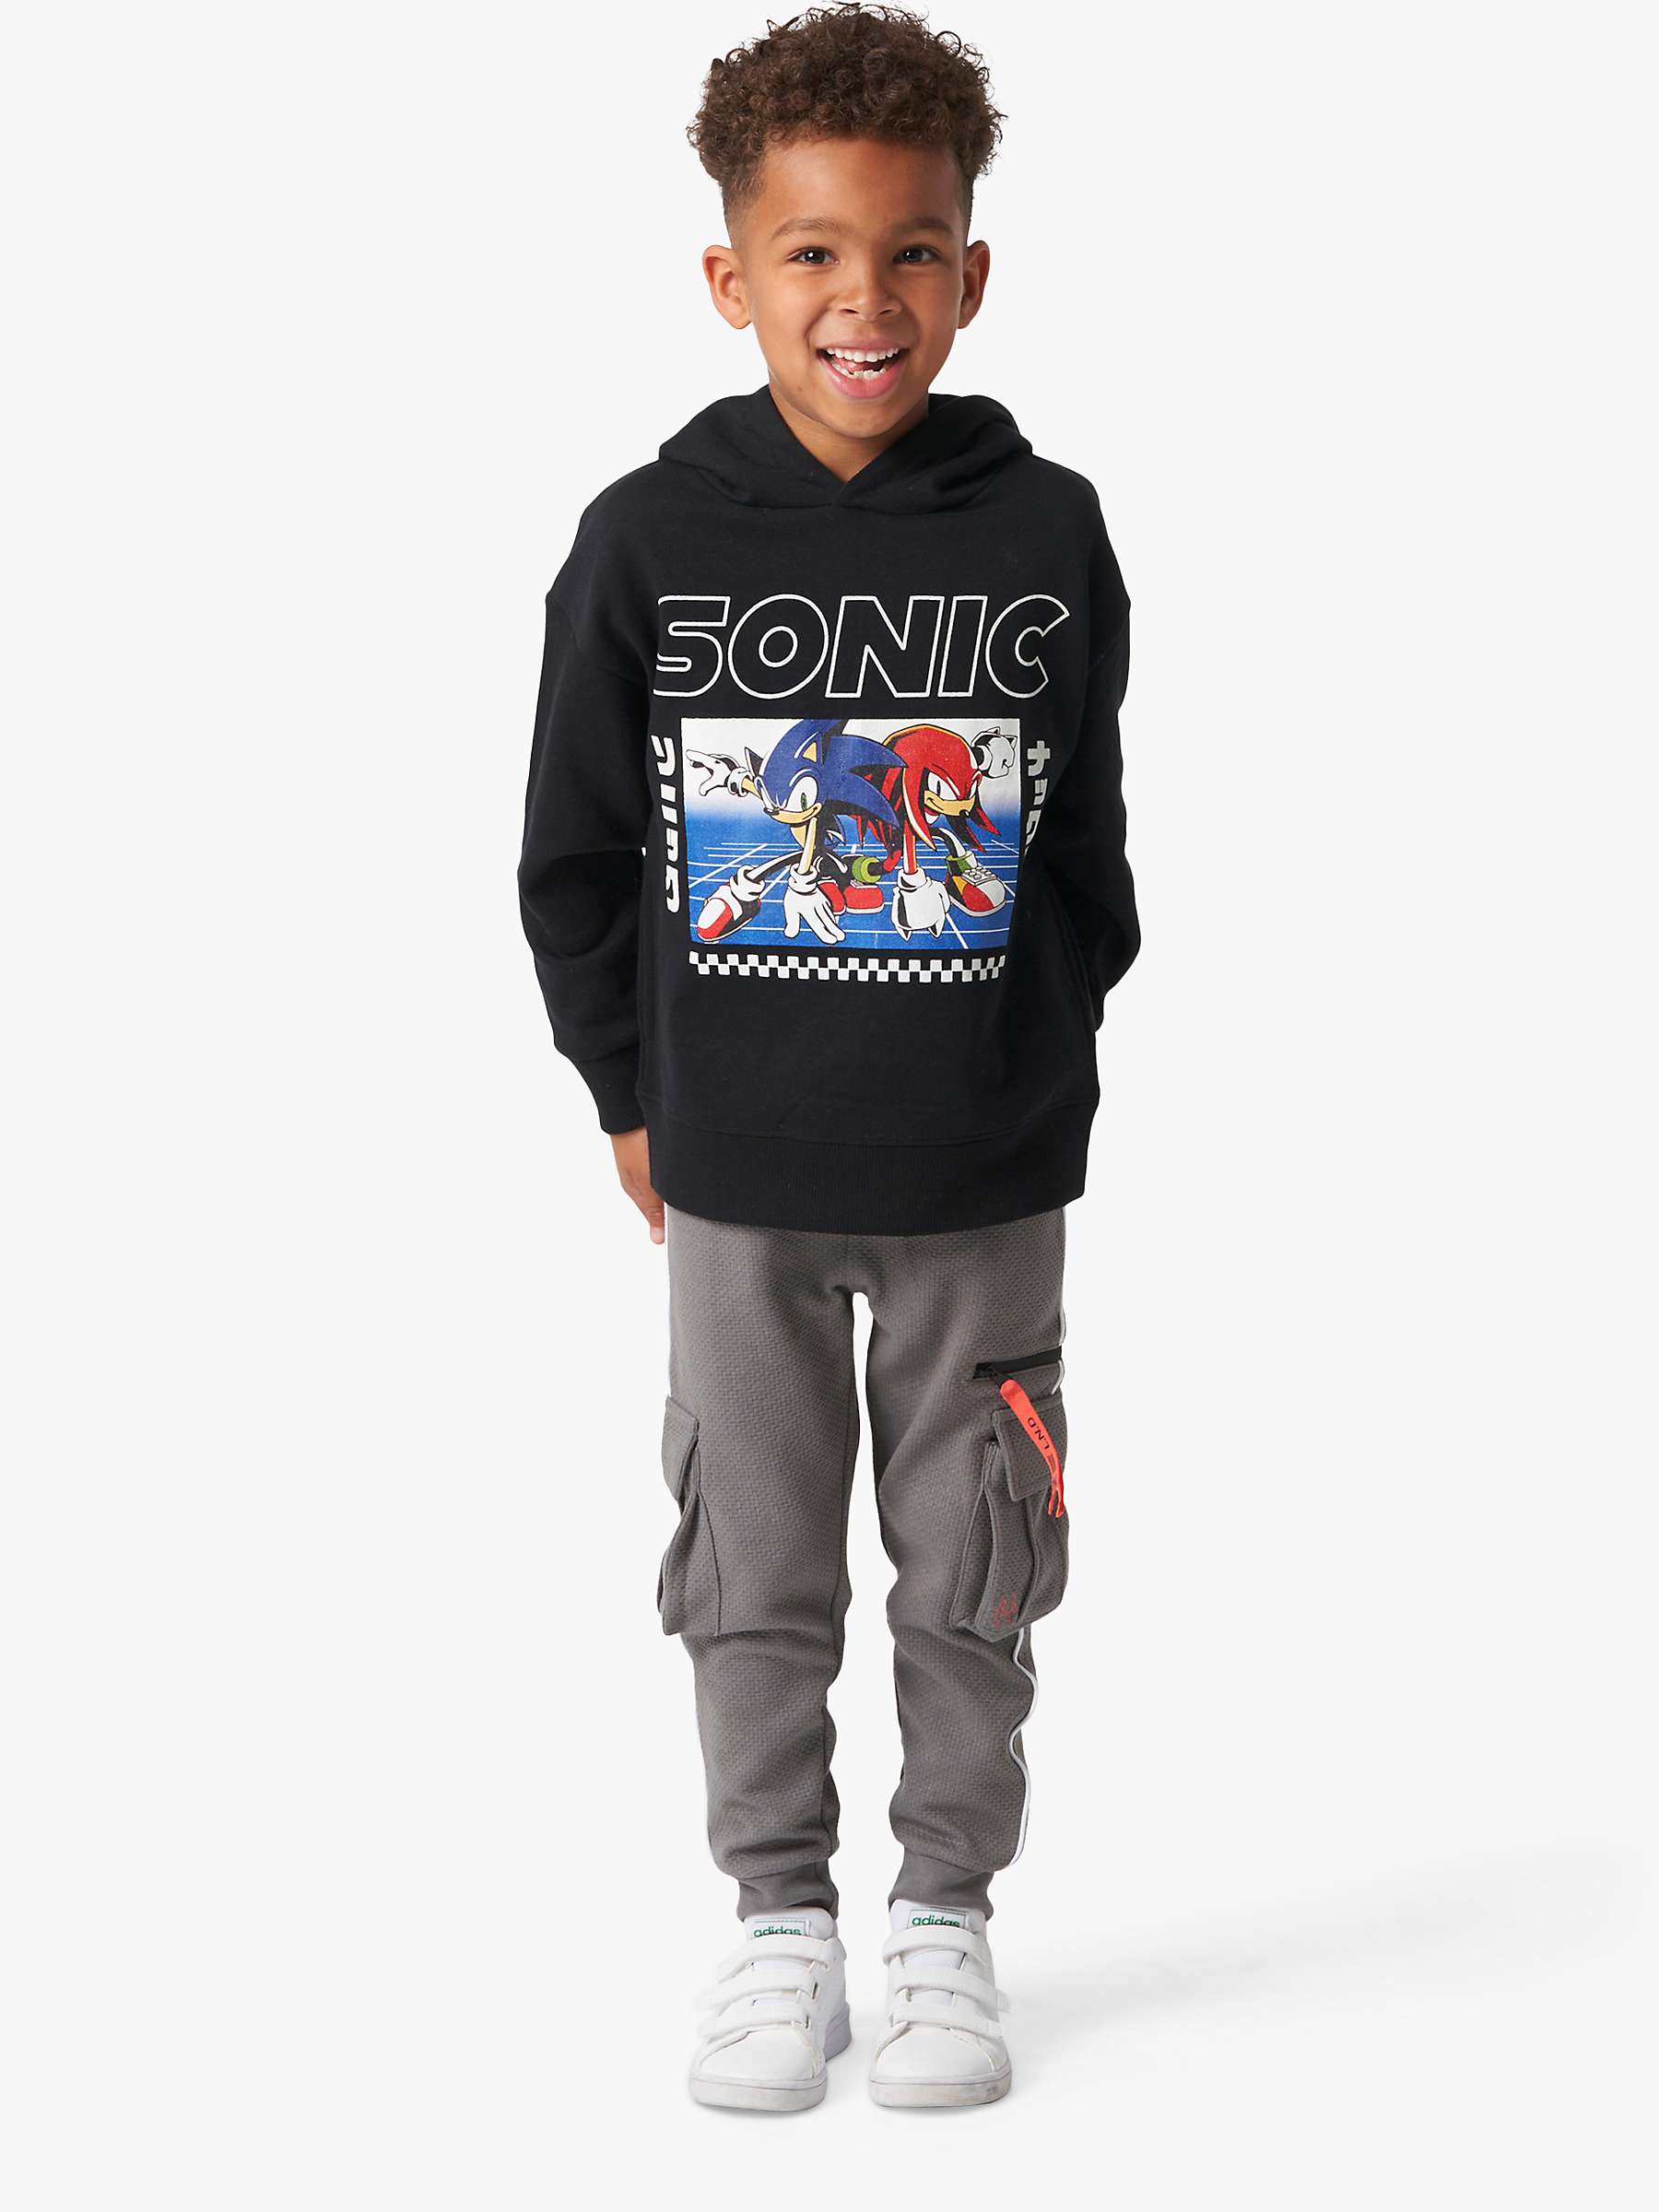 Buy Angel & Rocket Kids' Sonic Print Hoodie, Black Online at johnlewis.com